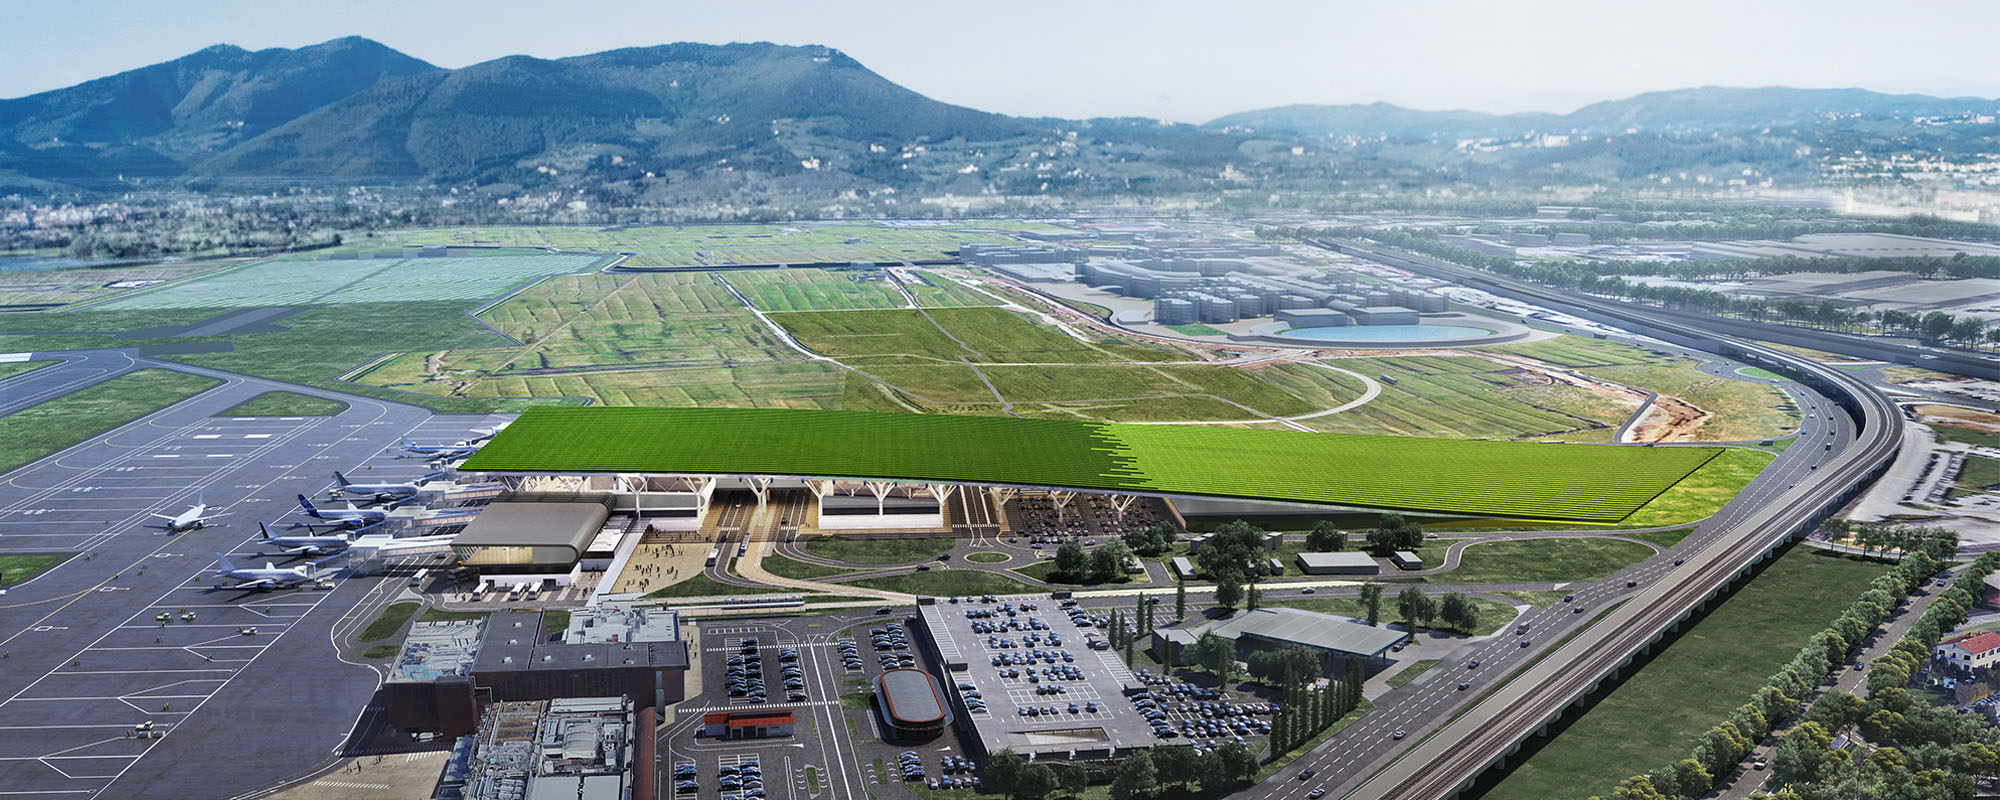 Italienii vor să construiască un aeroport cu o podgorie de 7,7 hectare pe acoperiș